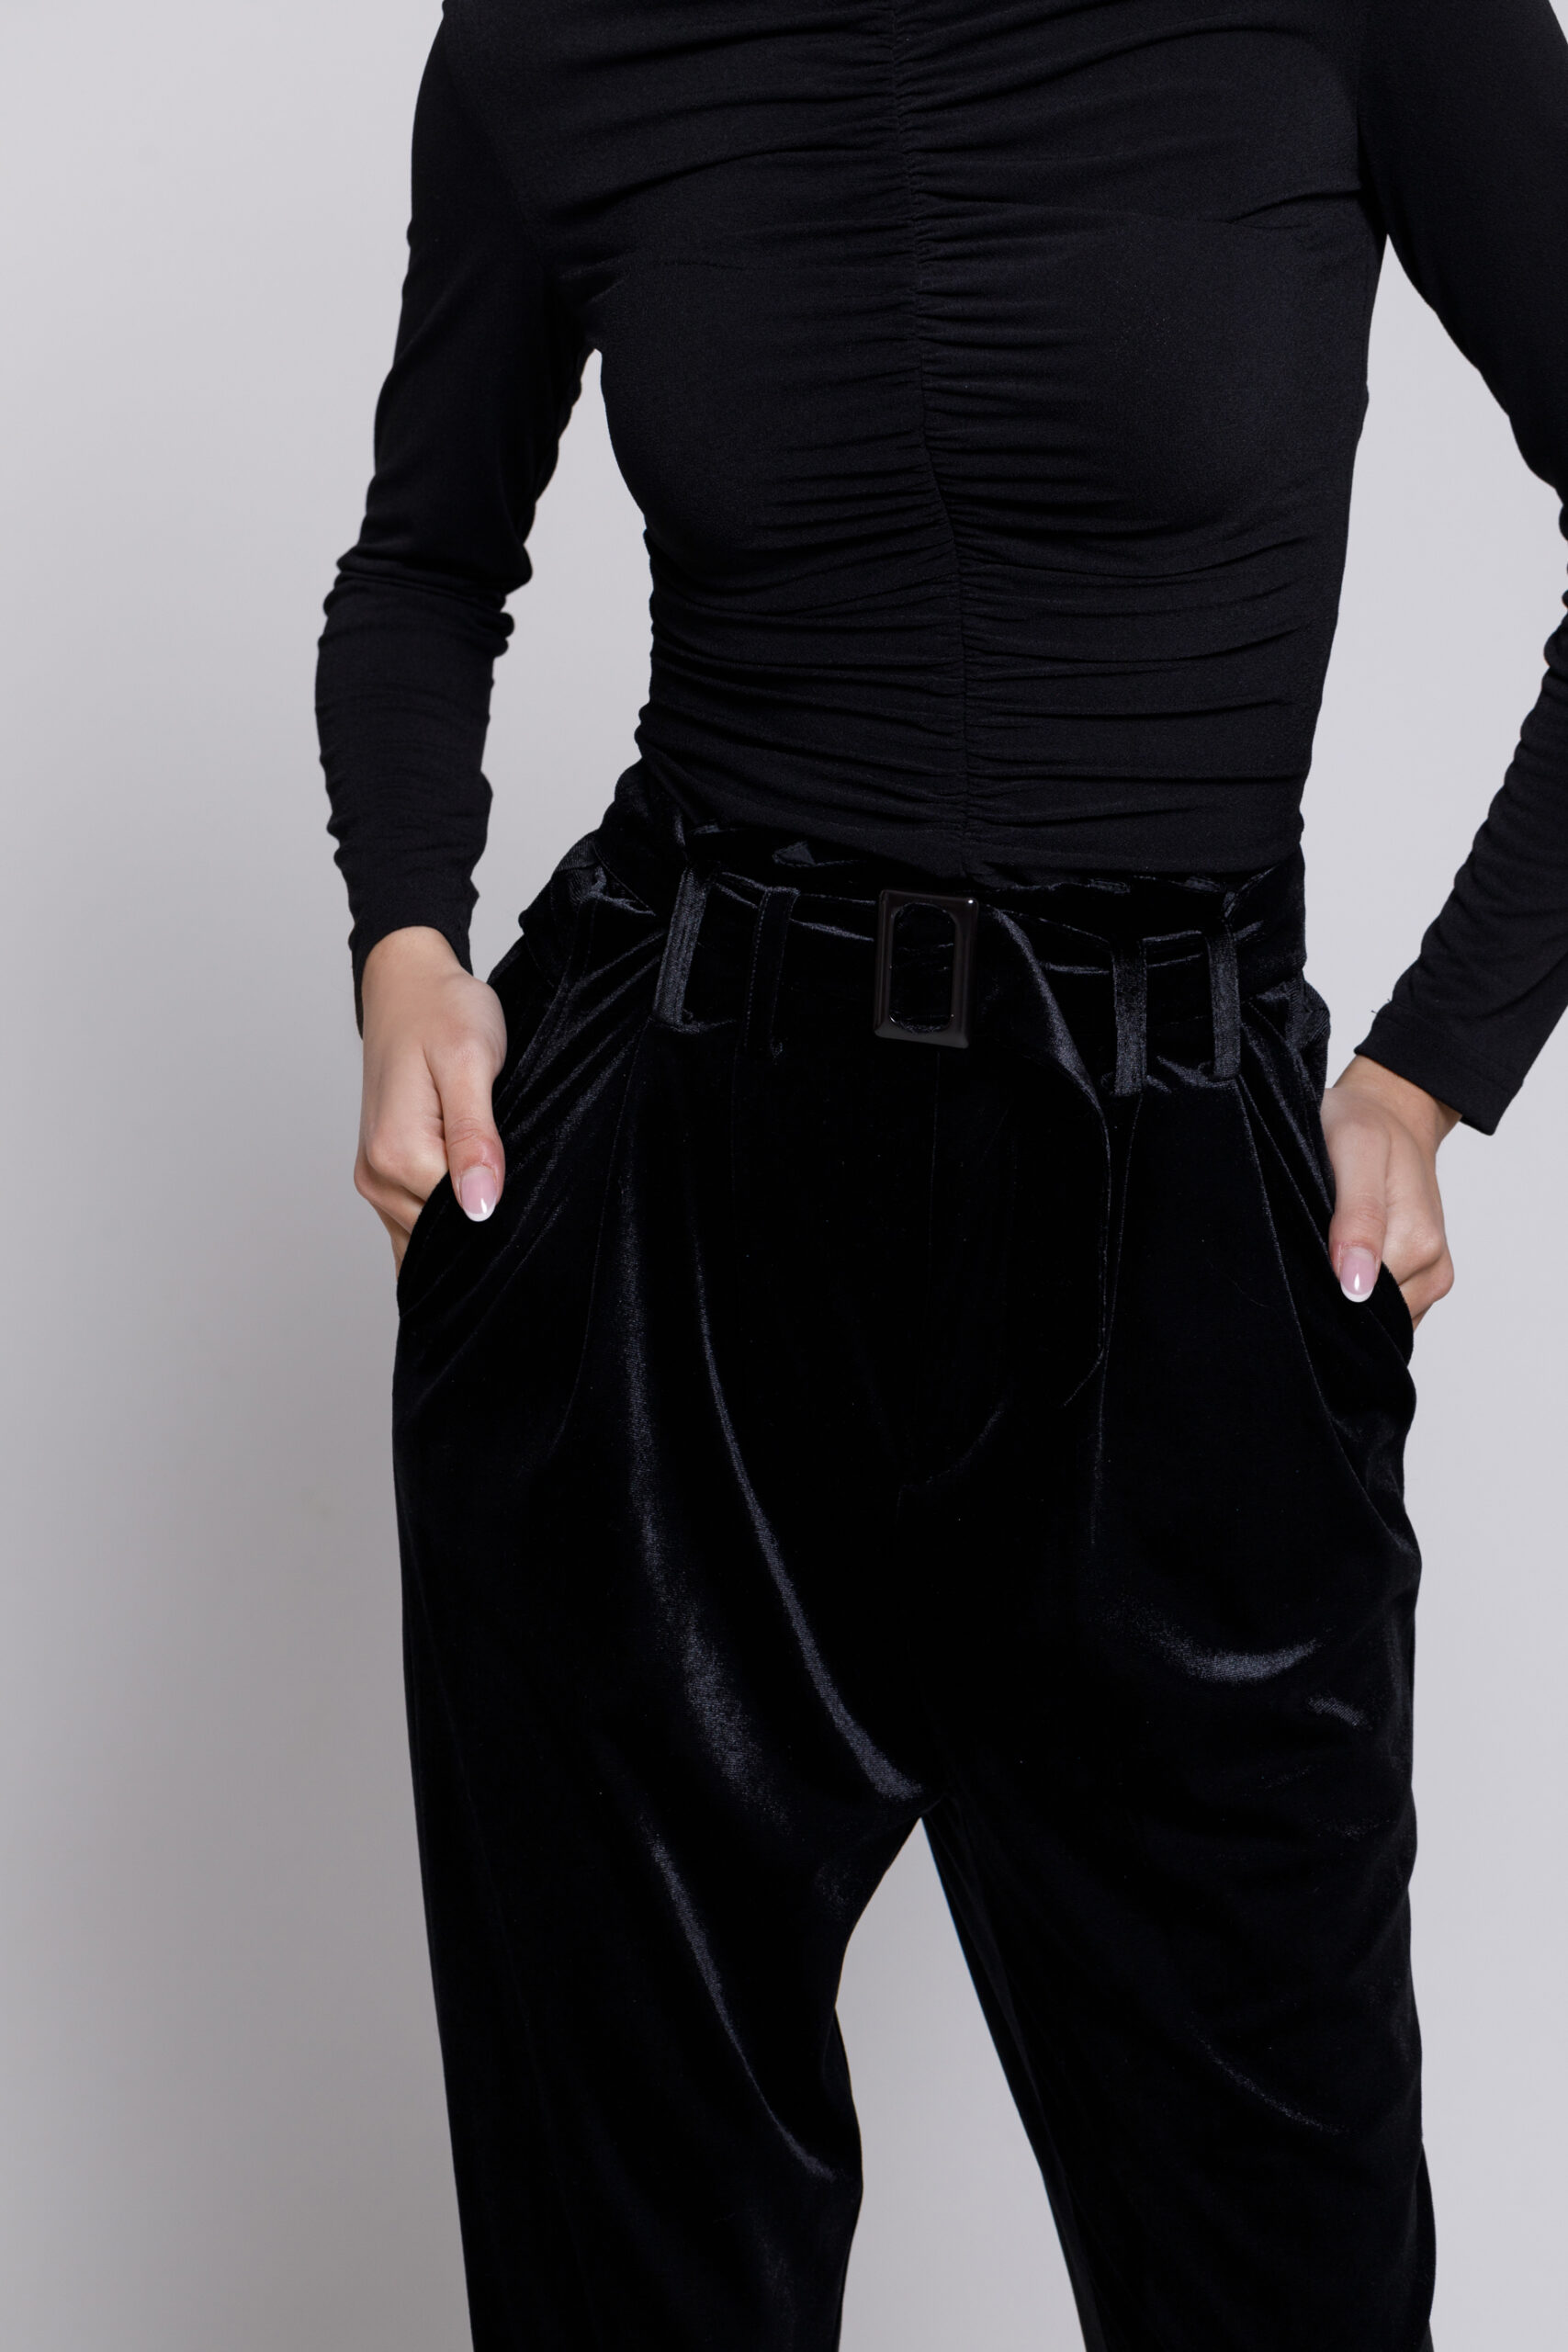 Pantalon CARMEN din catifea neagra cu curea. Materiale naturale, design unicat, cu broderie si aplicatii handmade